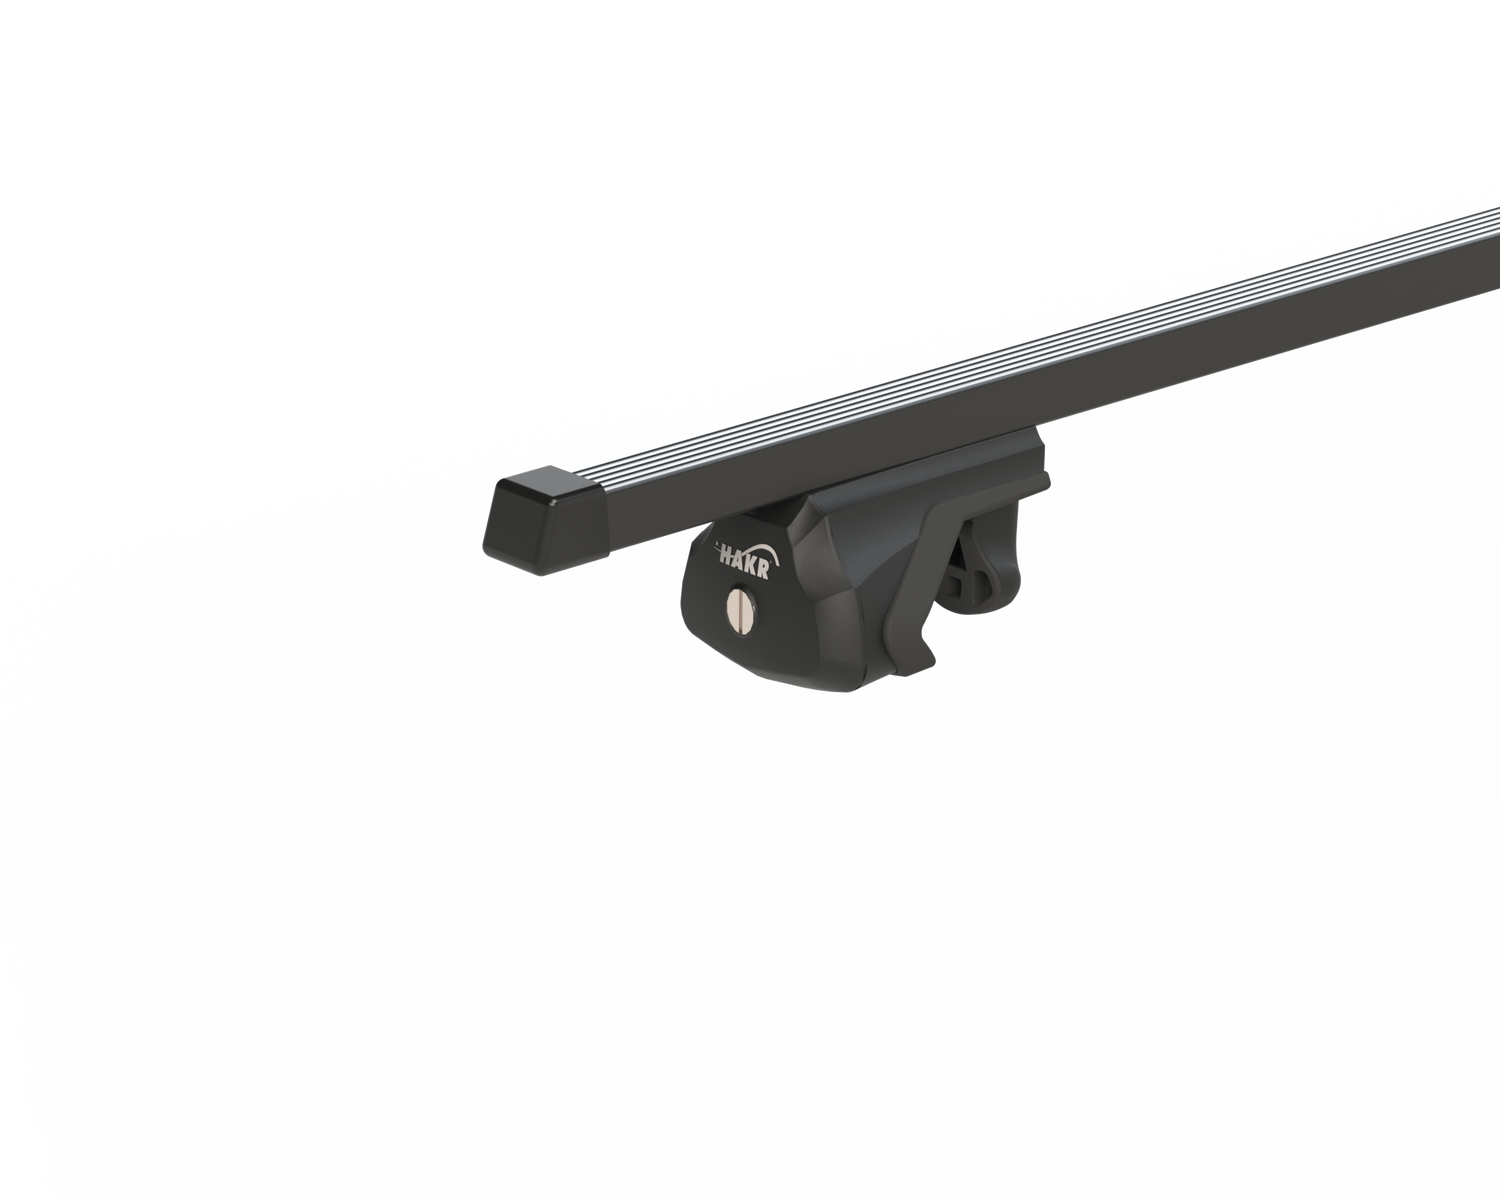 Střešní nosič OPEL ZAFIRA 5dv MPV s integrovanými podélníky, černá Fe tyč